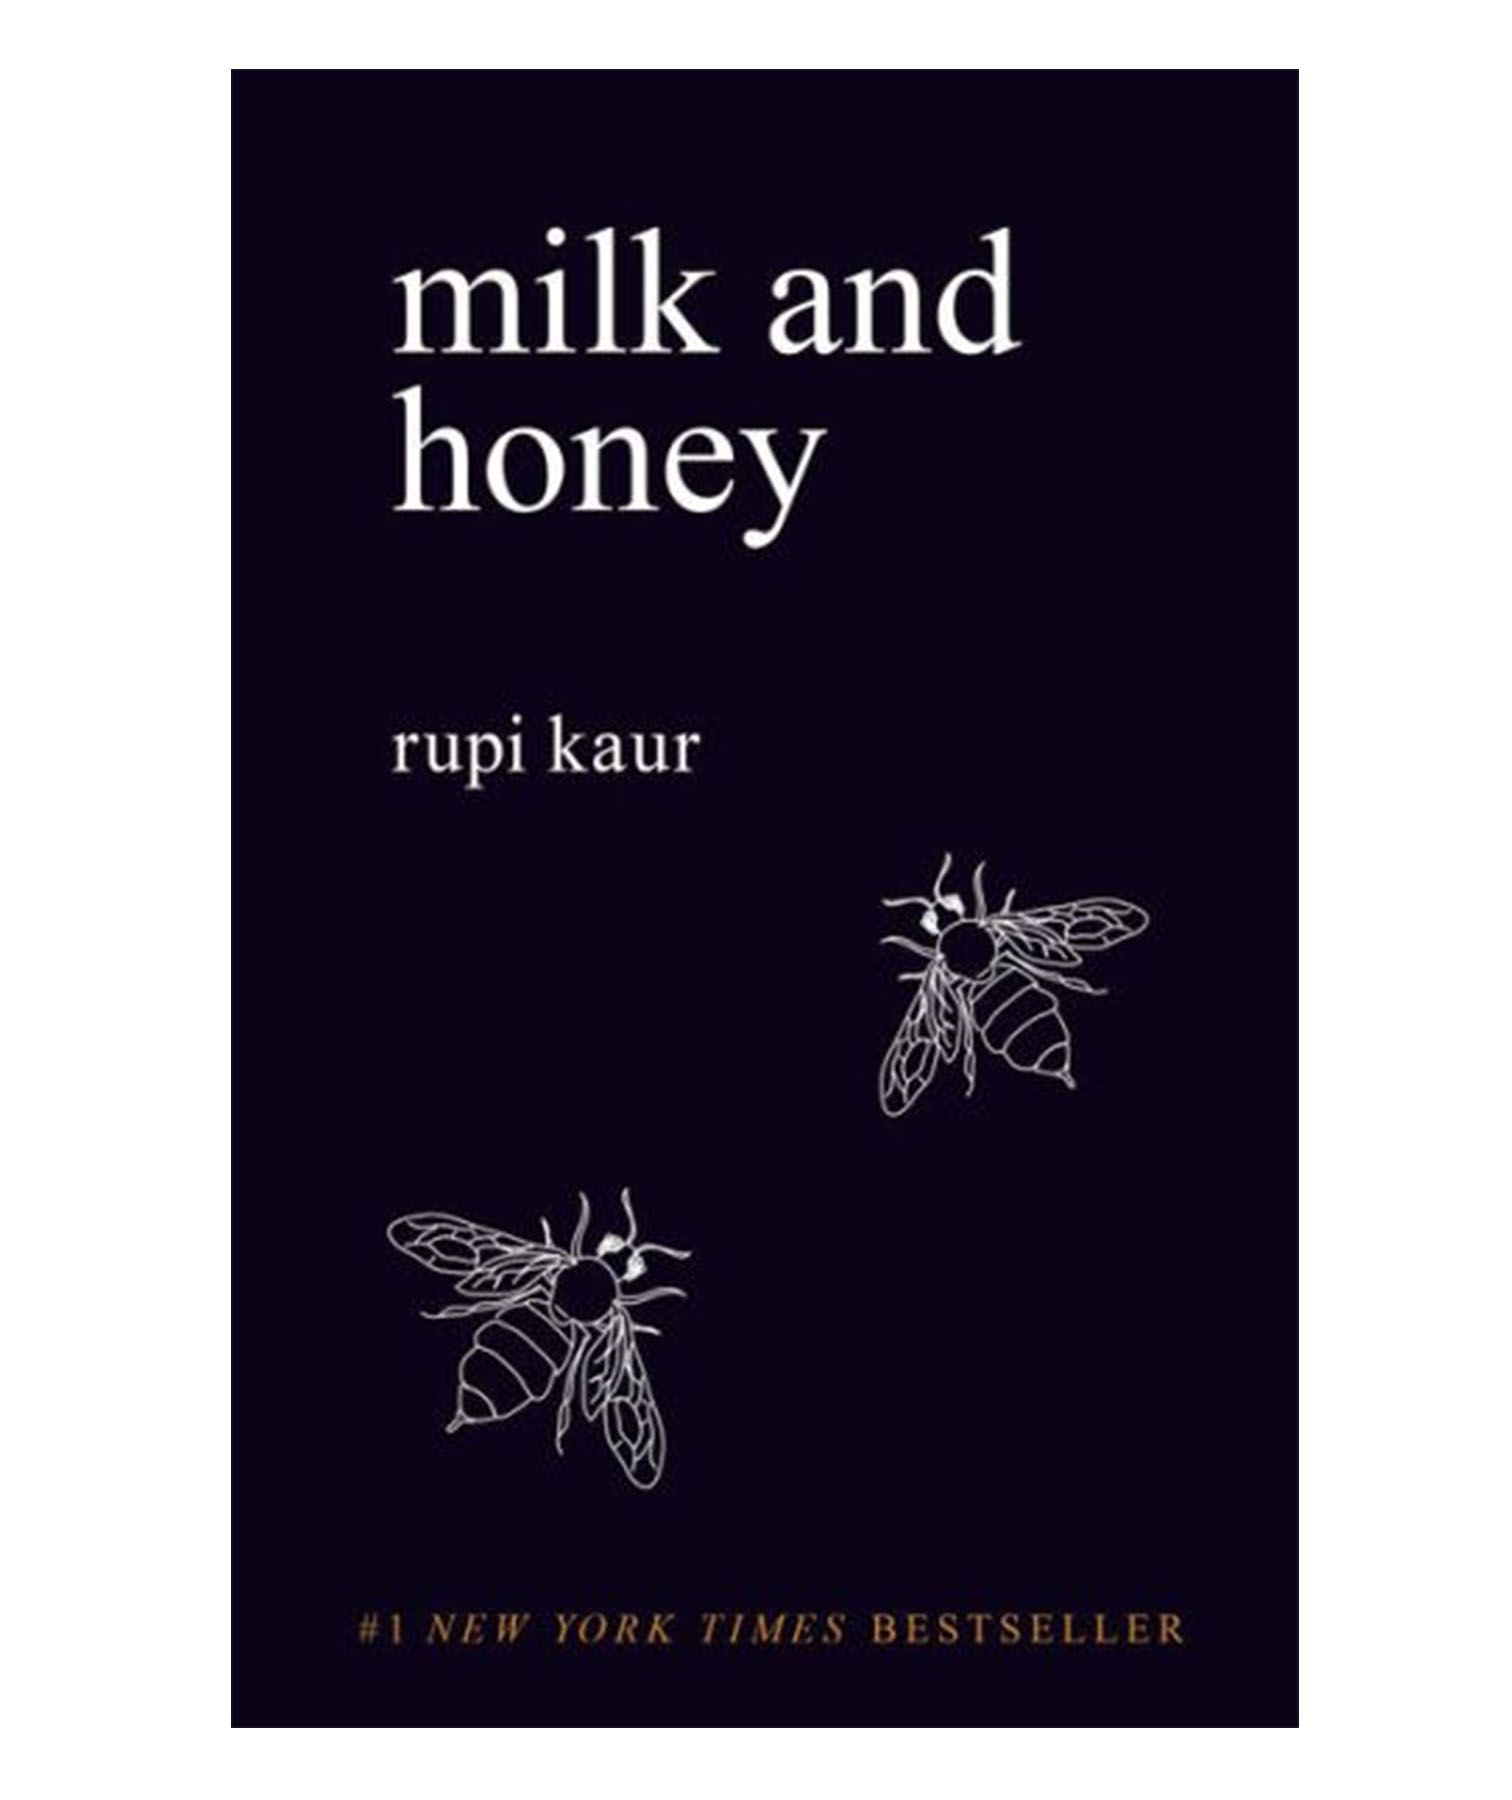 Melk og honningbok